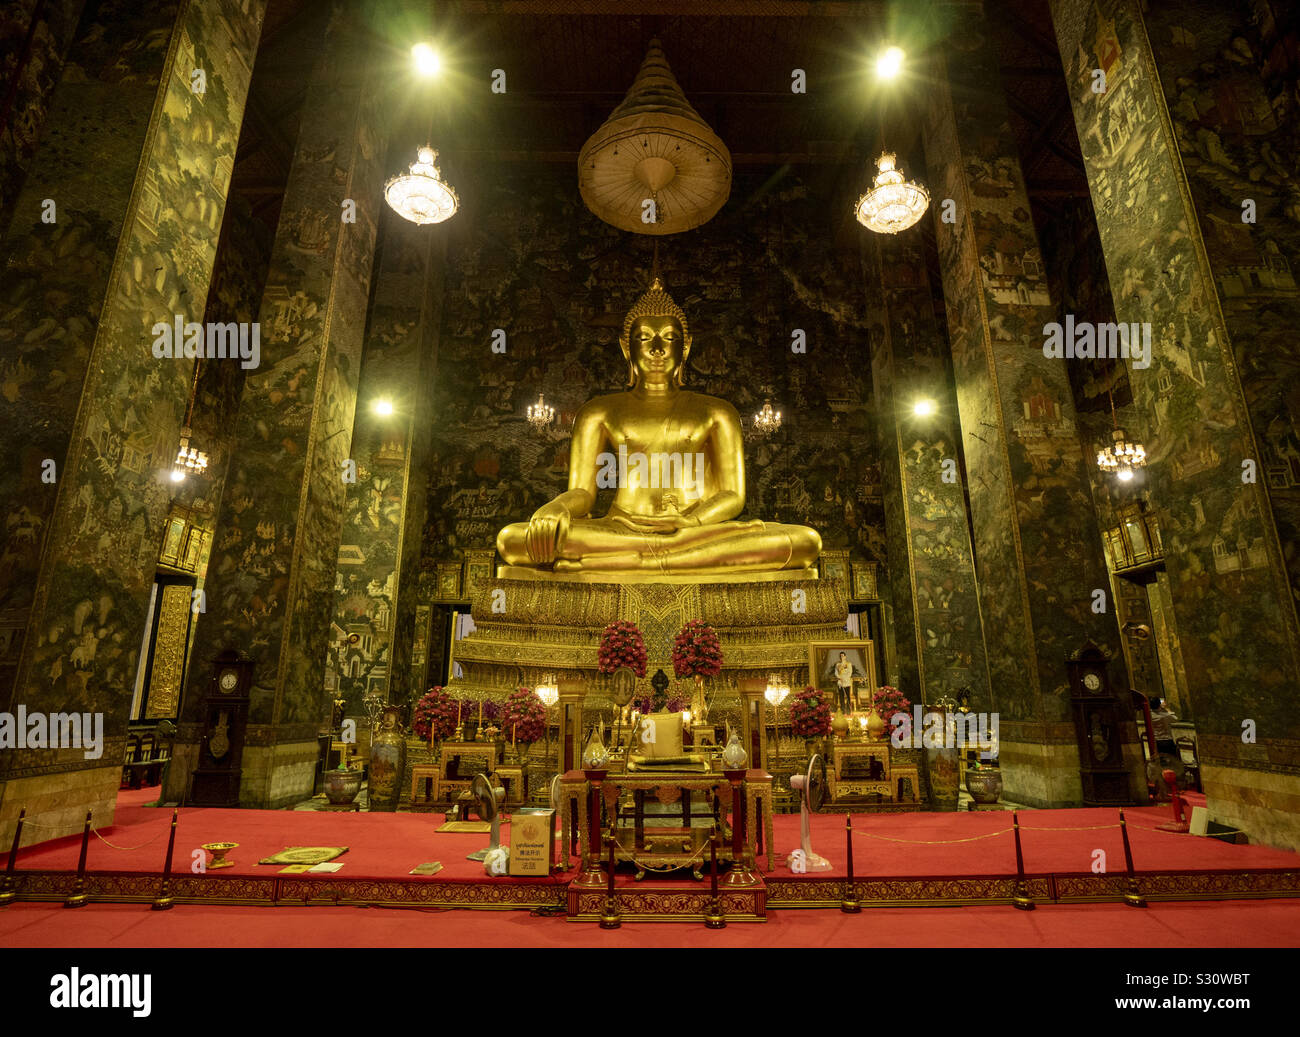 Giant Golden Statue di Buddha nel tempio, Foto Stock